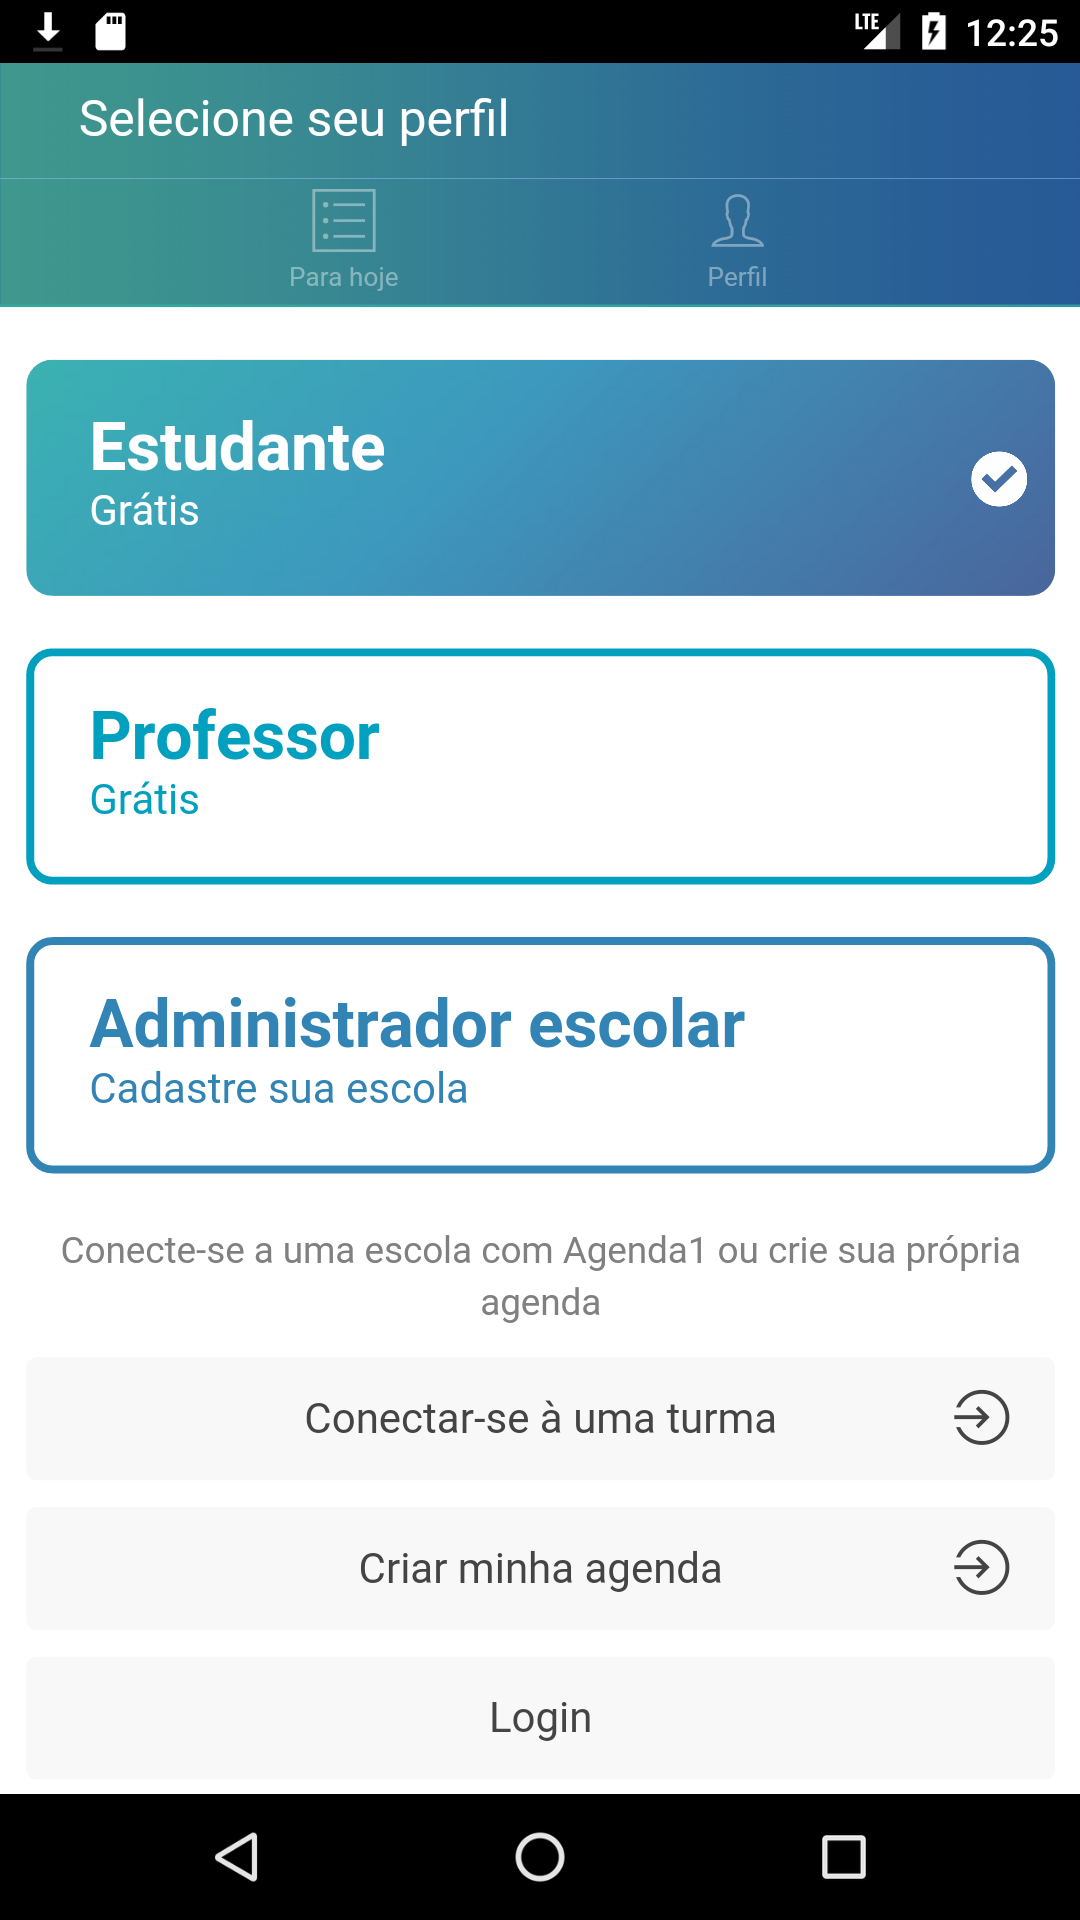 Android application Agenda1 − Agenda escolar para alunos e professores screenshort